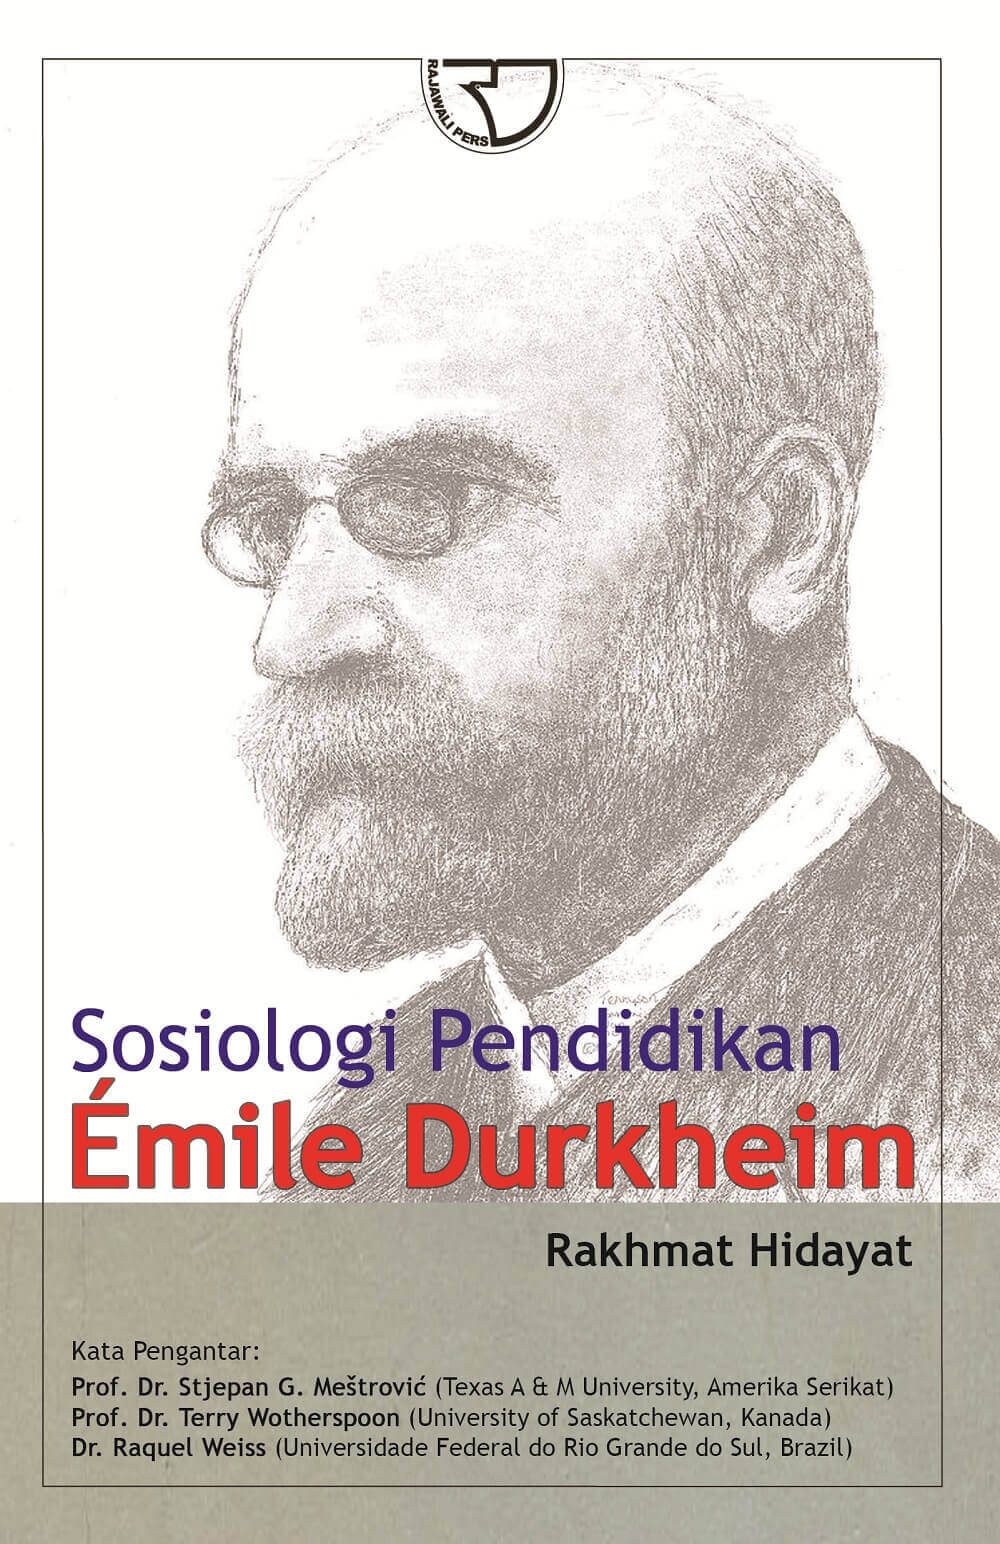 buku sosiologi pendidikan pdf